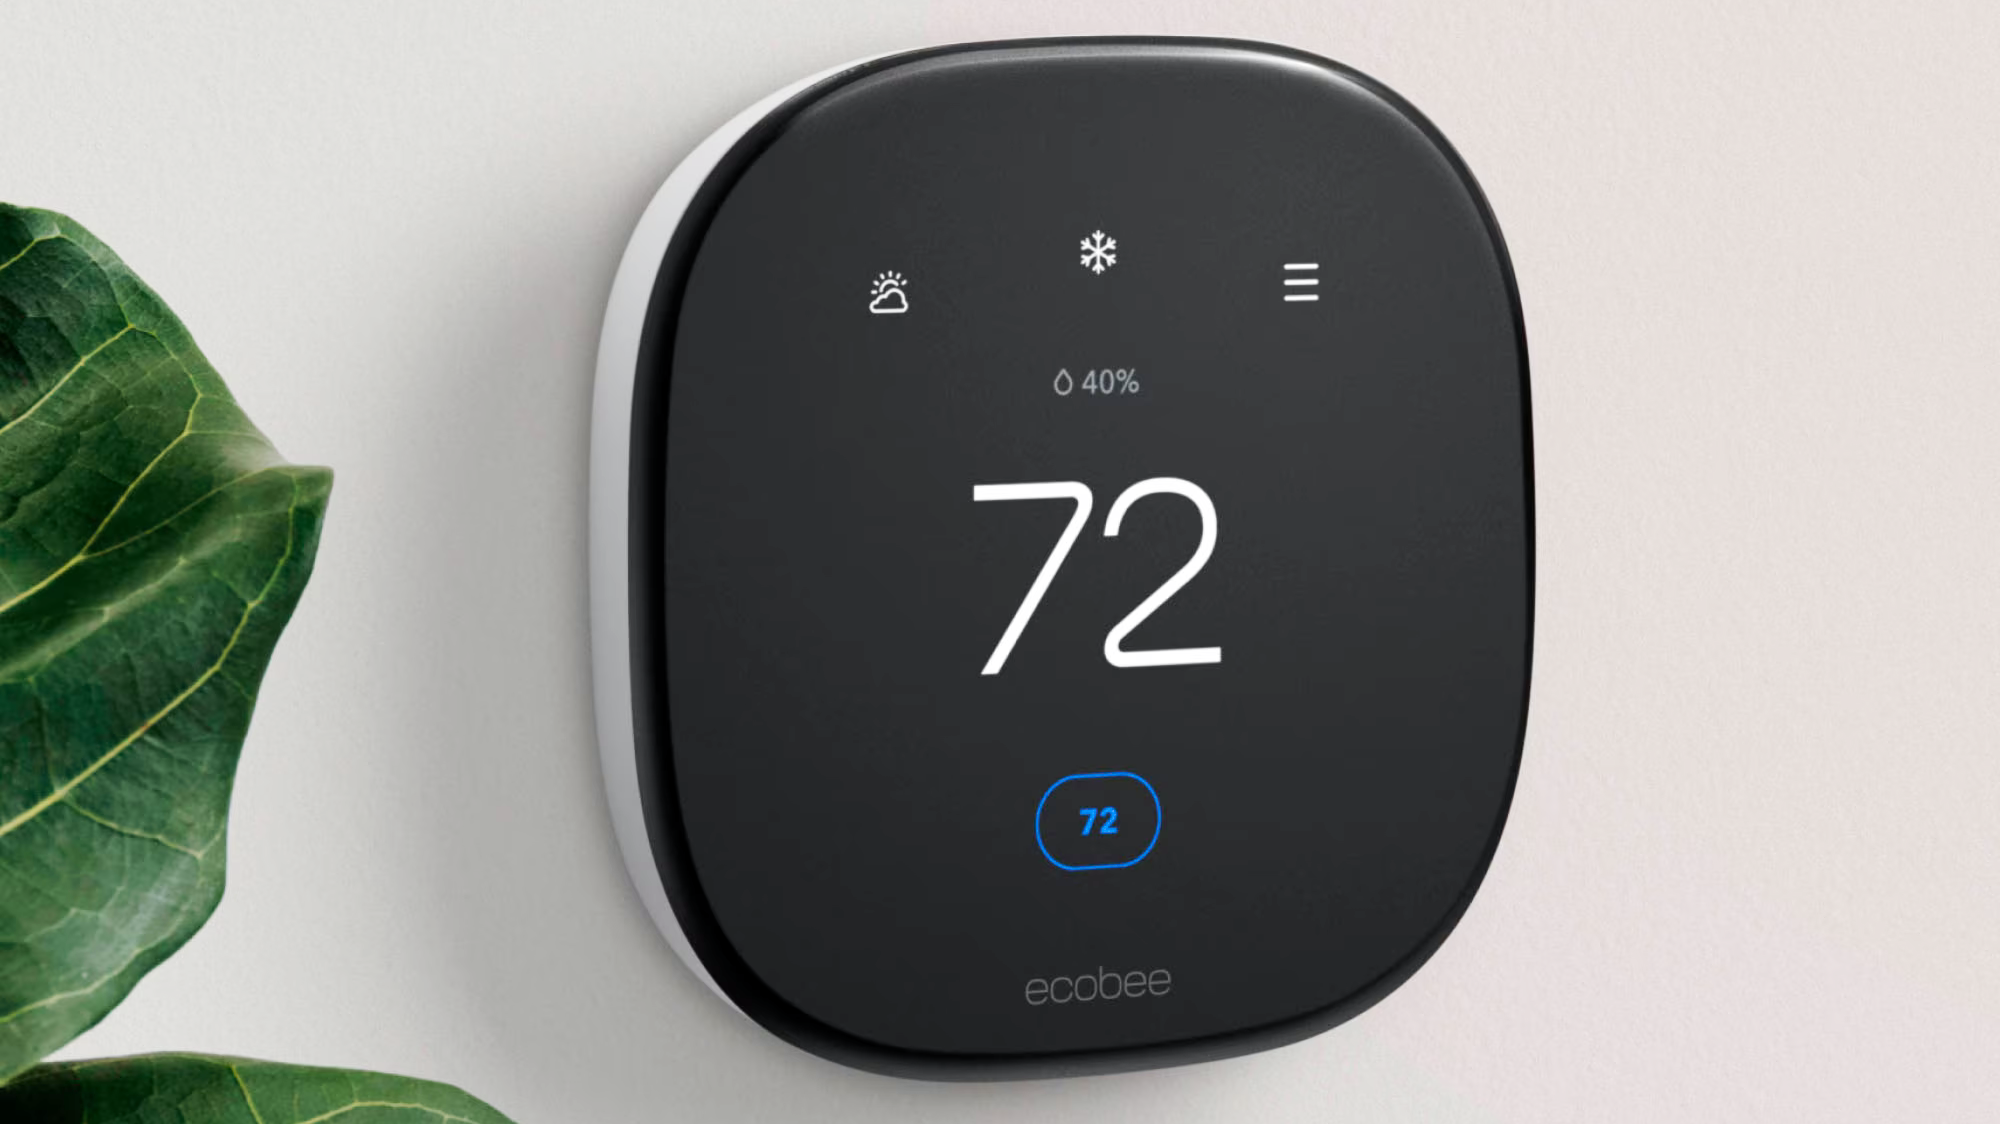 ecobee Smart Thermostat aprimorado pendurado na parede